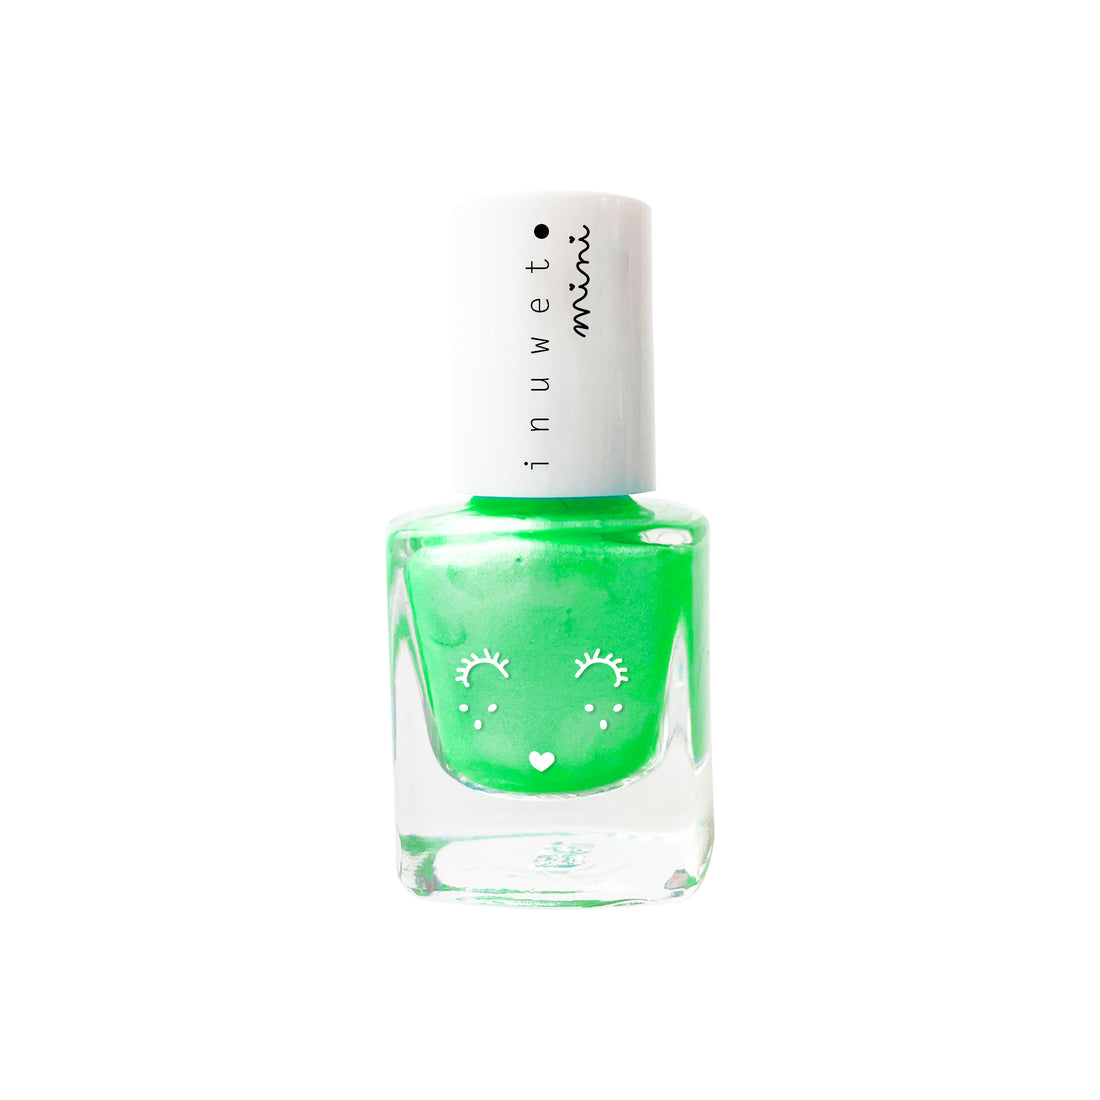 inuwet-neon-green-watermelon-scent-for-kids-inuw-vinkv17